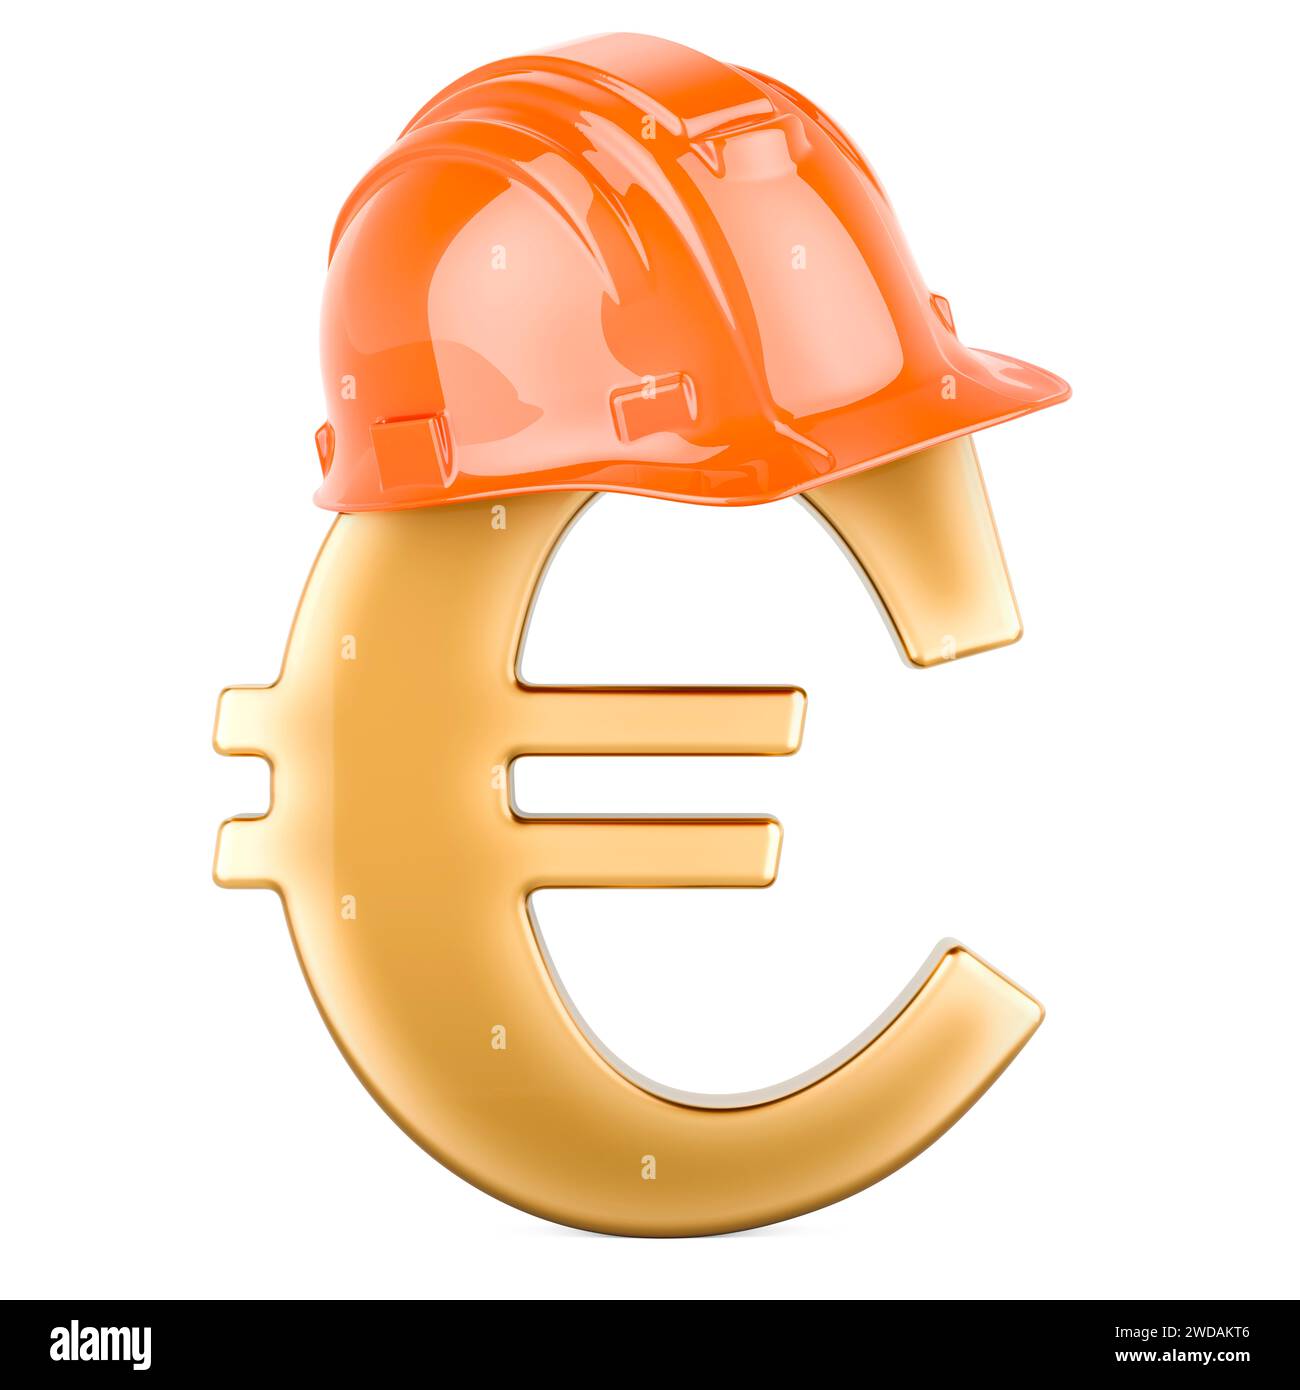 Simbolo euro con elmetto, rendering 3D isolato su sfondo bianco Foto Stock